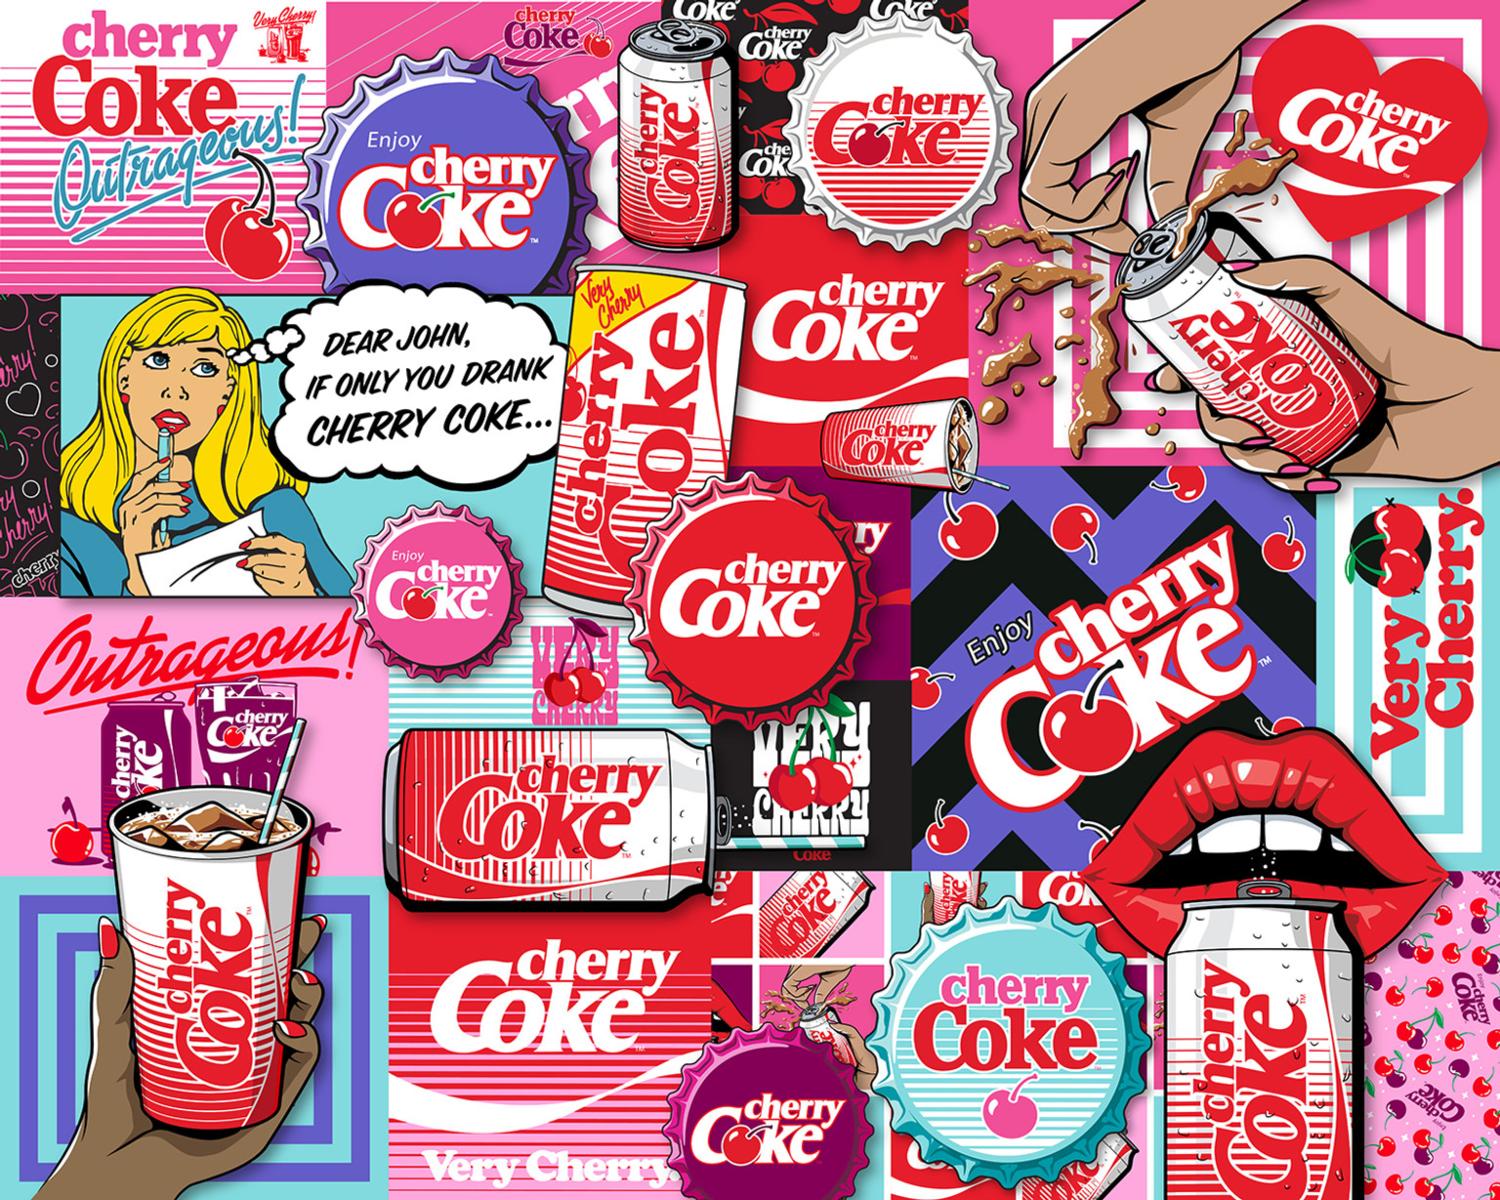 Coca-Cola Cherry Coke Nostalgic & Retro Jigsaw Puzzle